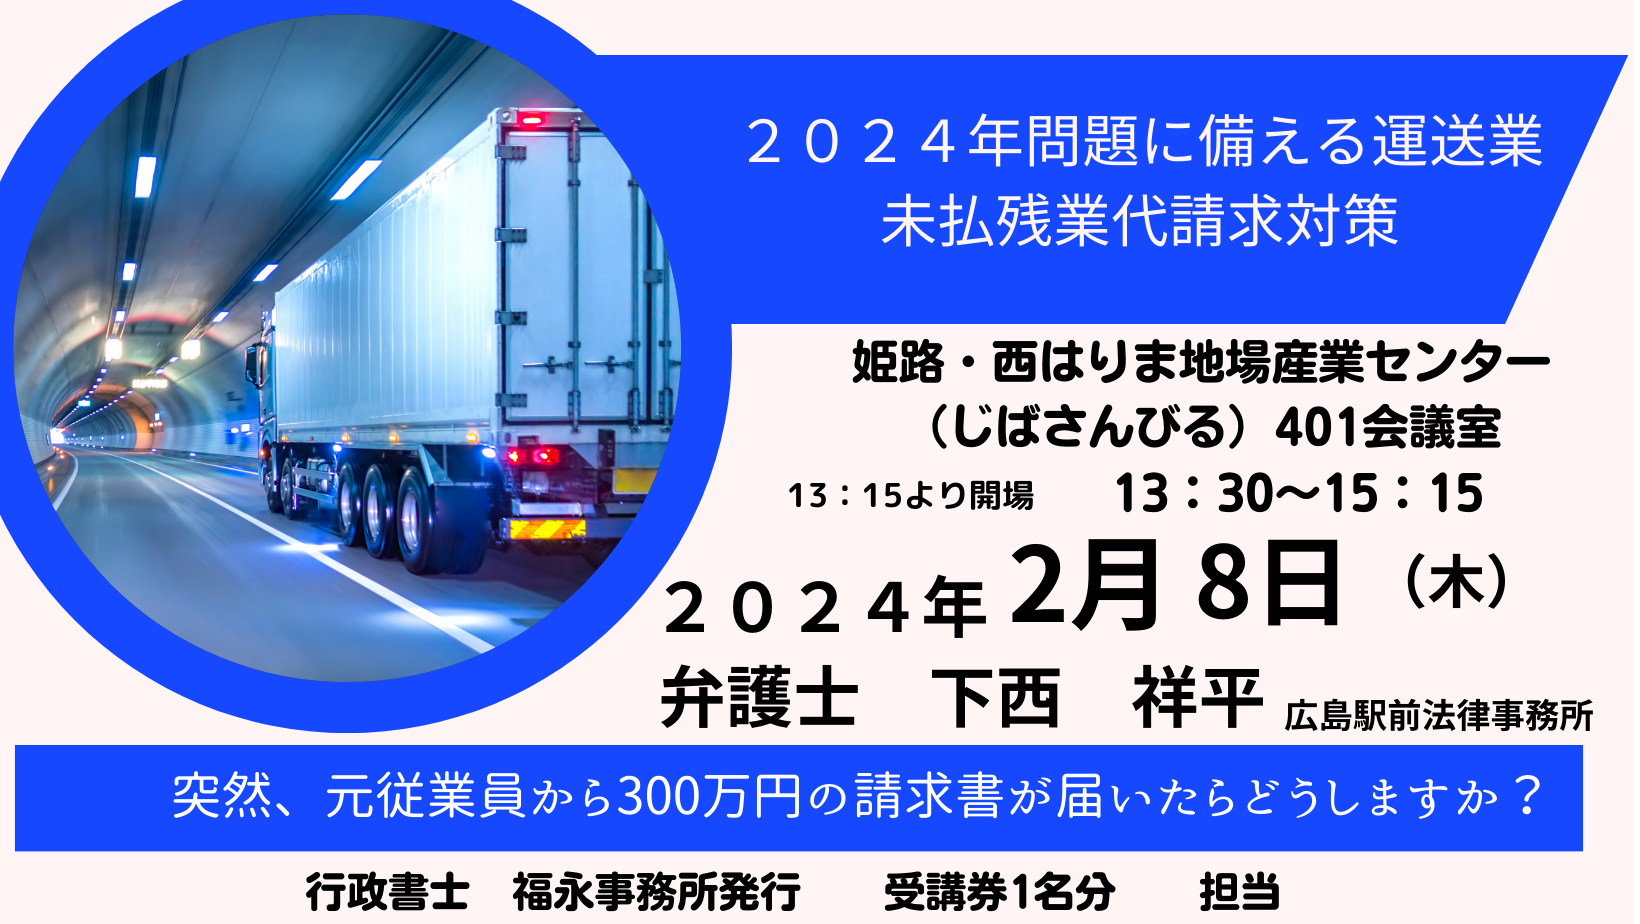 【運送業向け】「２０２４年問題に備える運送業未払残業代対策」セミナー＠姫路